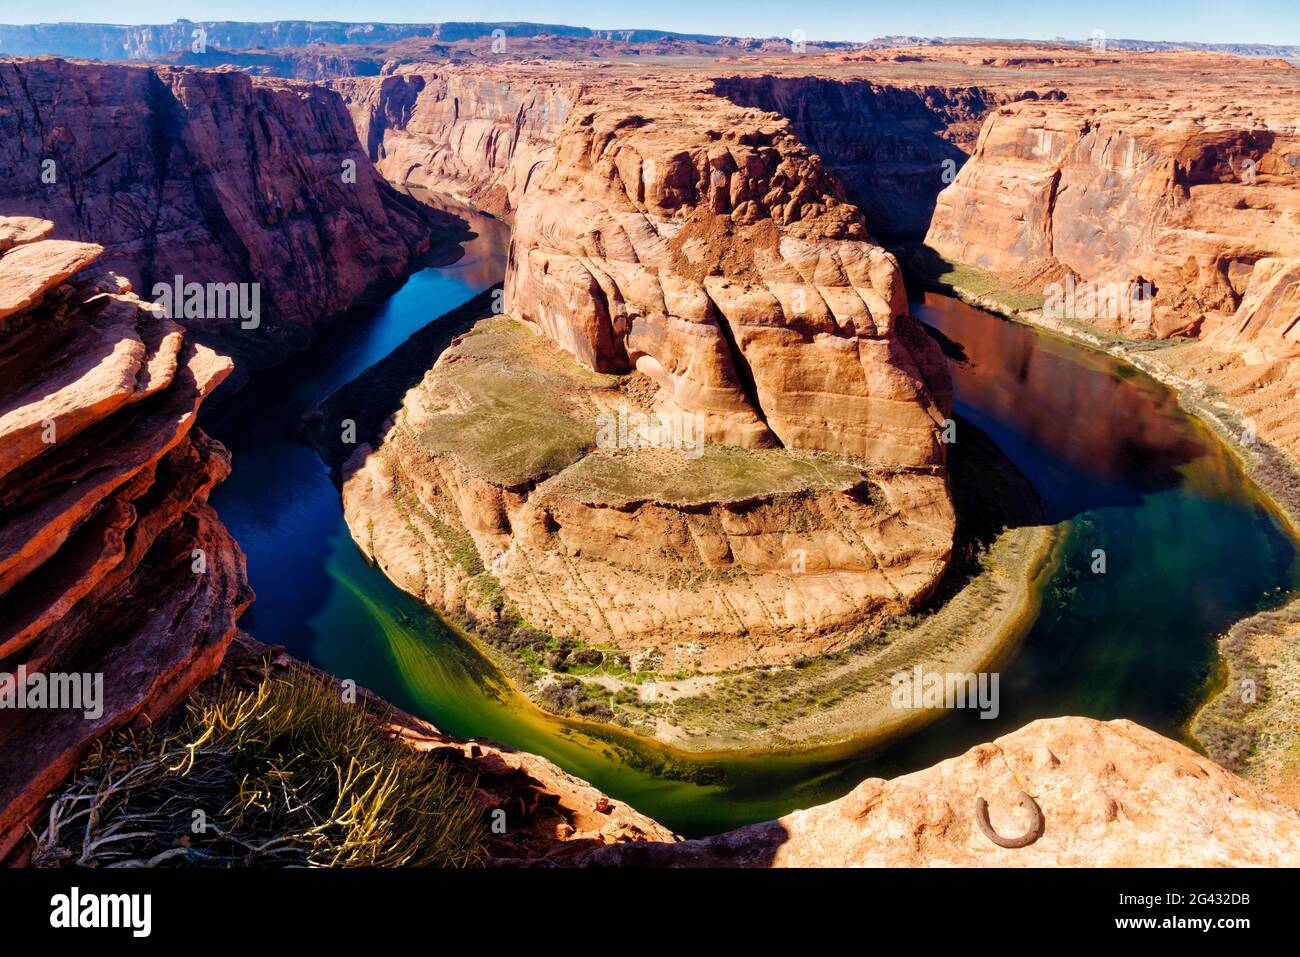 Le fleuve Colorado serpentant dans le canyon Horseshoe Bend, zone de loisirs Glen Canyon, Arizona, États-Unis Banque D'Images